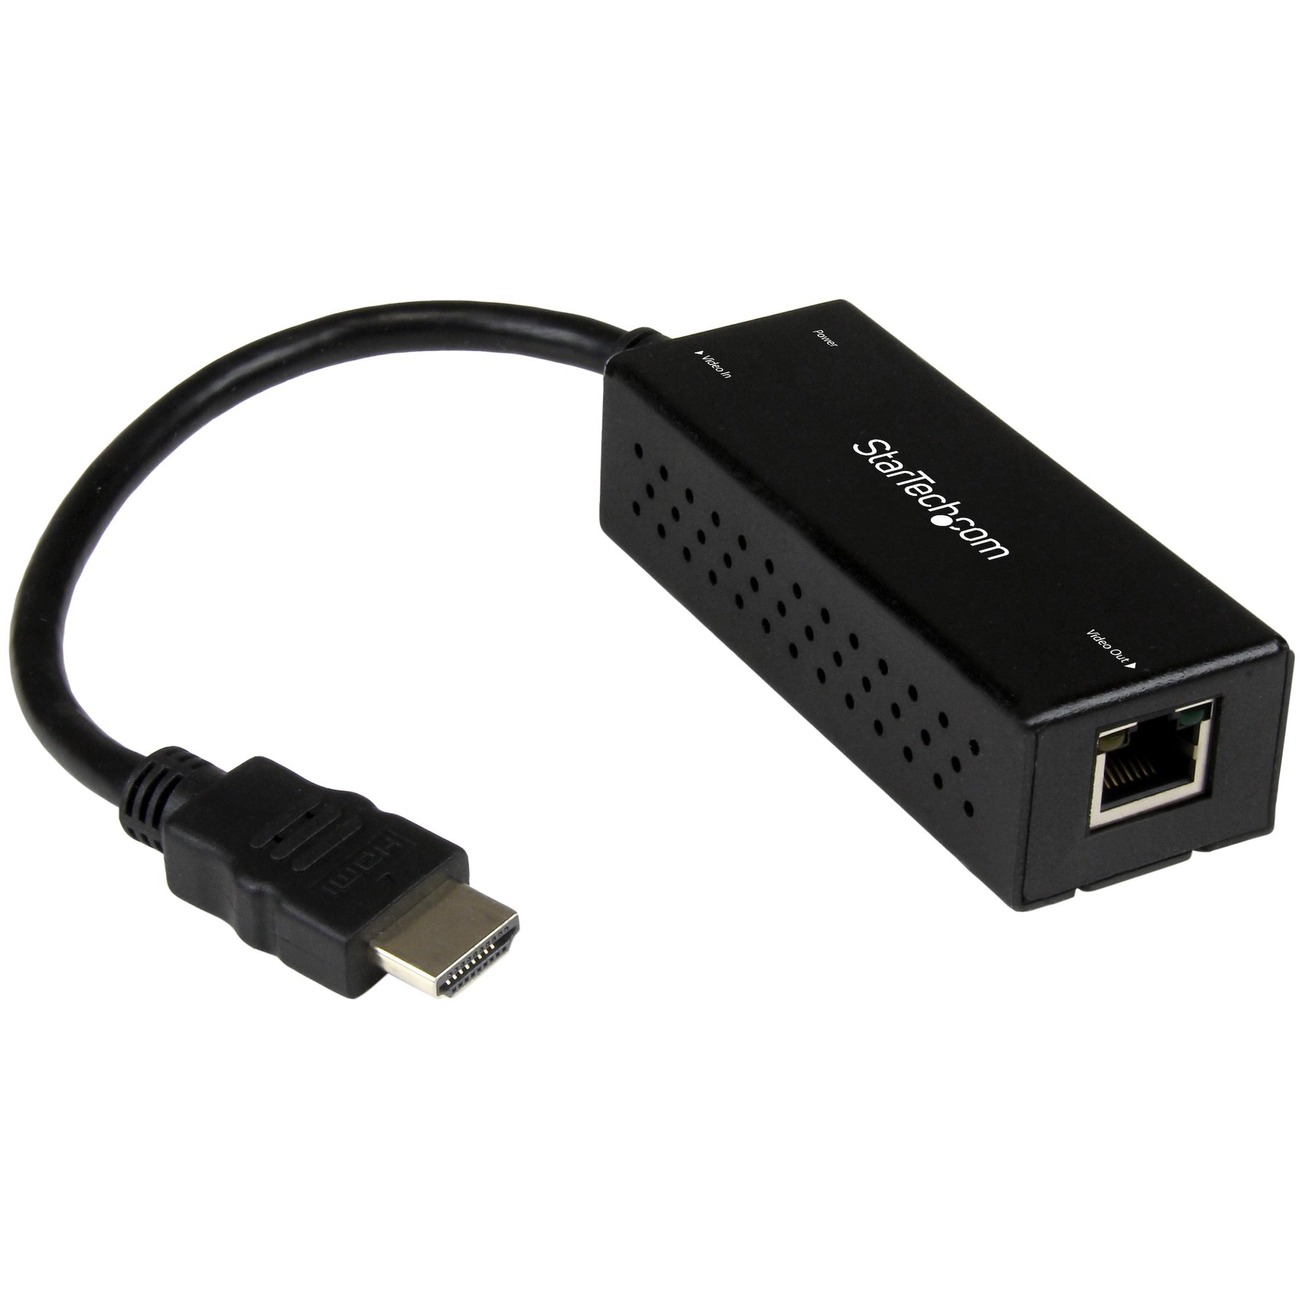 Startech : WIRELESS HDMI TRANSMITTER kit 656 FT 1080P HDMI EXTENDER